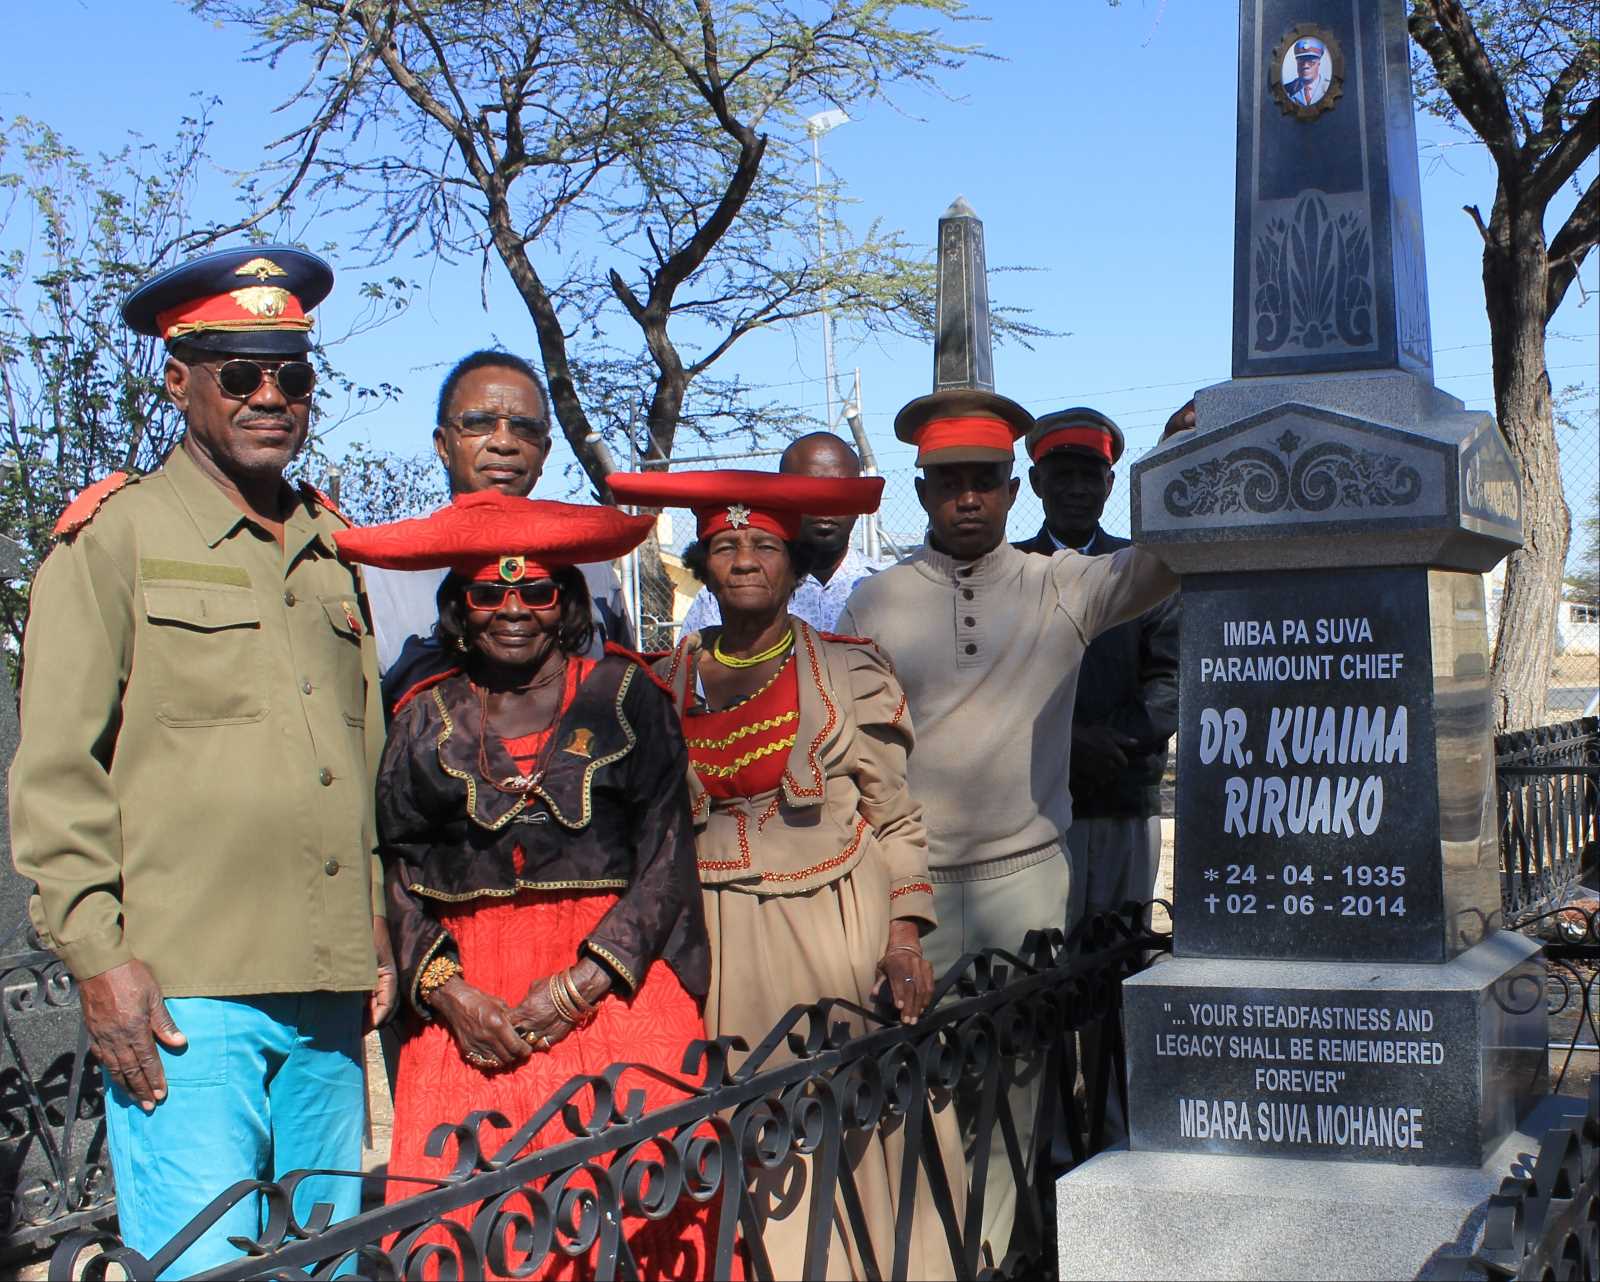 Ovaherero gathering at a chieftain’s grave in the Namibian city of Okahandja.